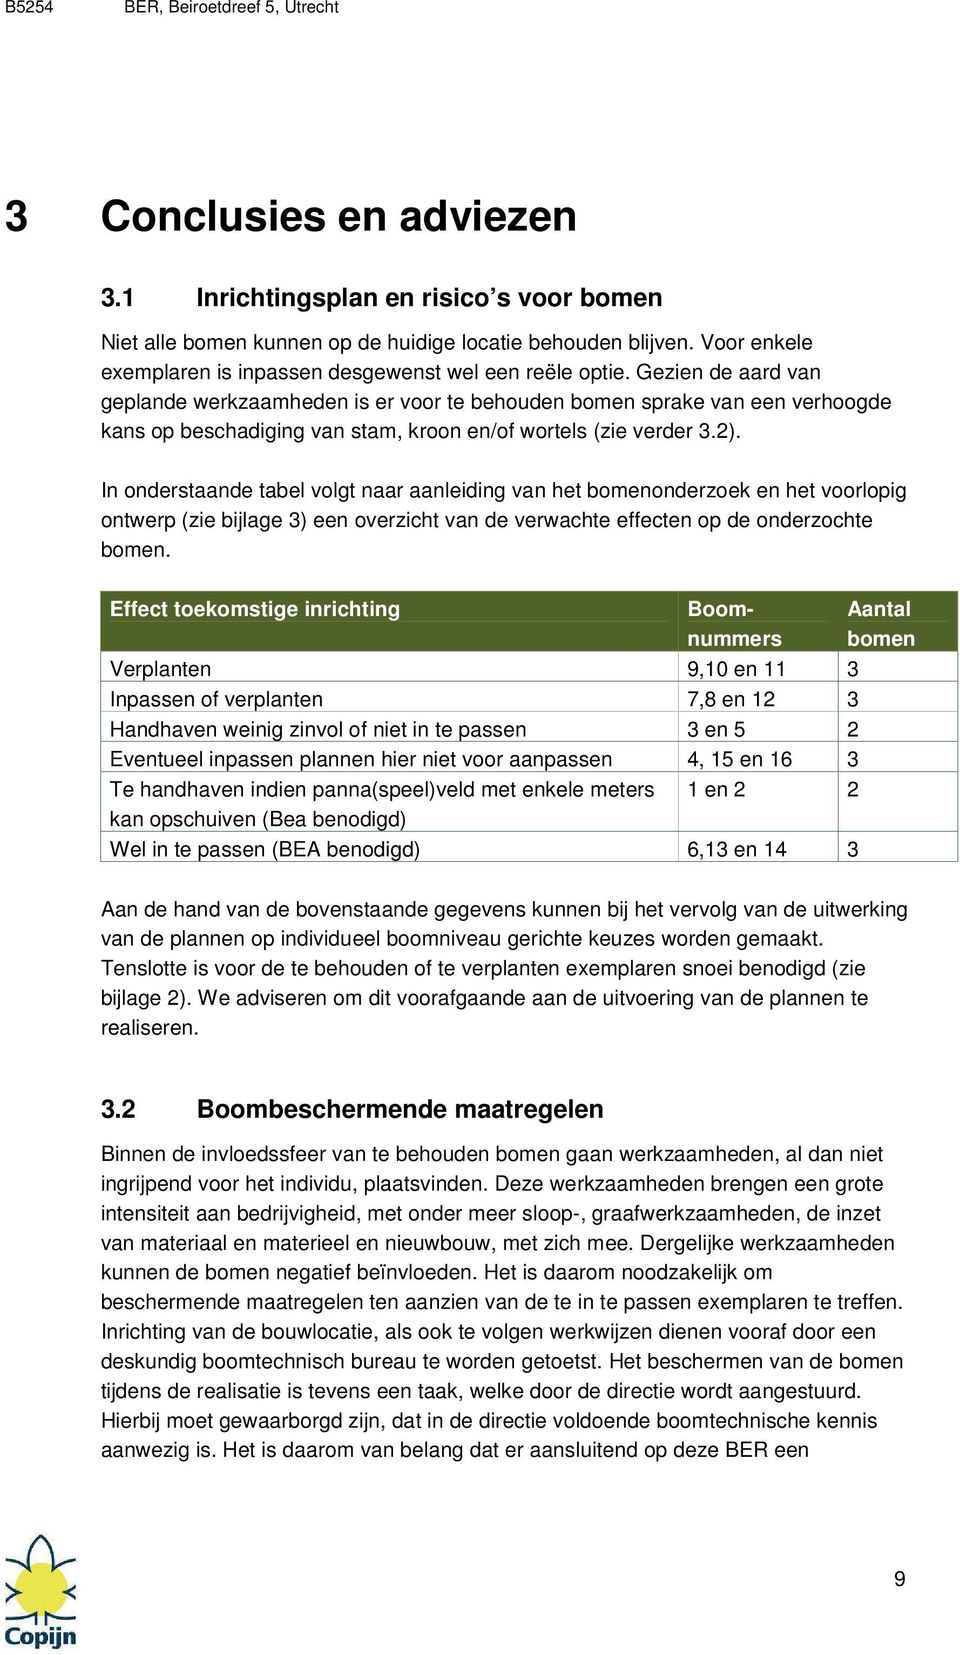 In onderstaande tabel volgt naar aanleiding van het bomenonderzoek en het voorlopig ontwerp (zie bijlage 3) een overzicht van de verwachte effecten op de onderzochte bomen.